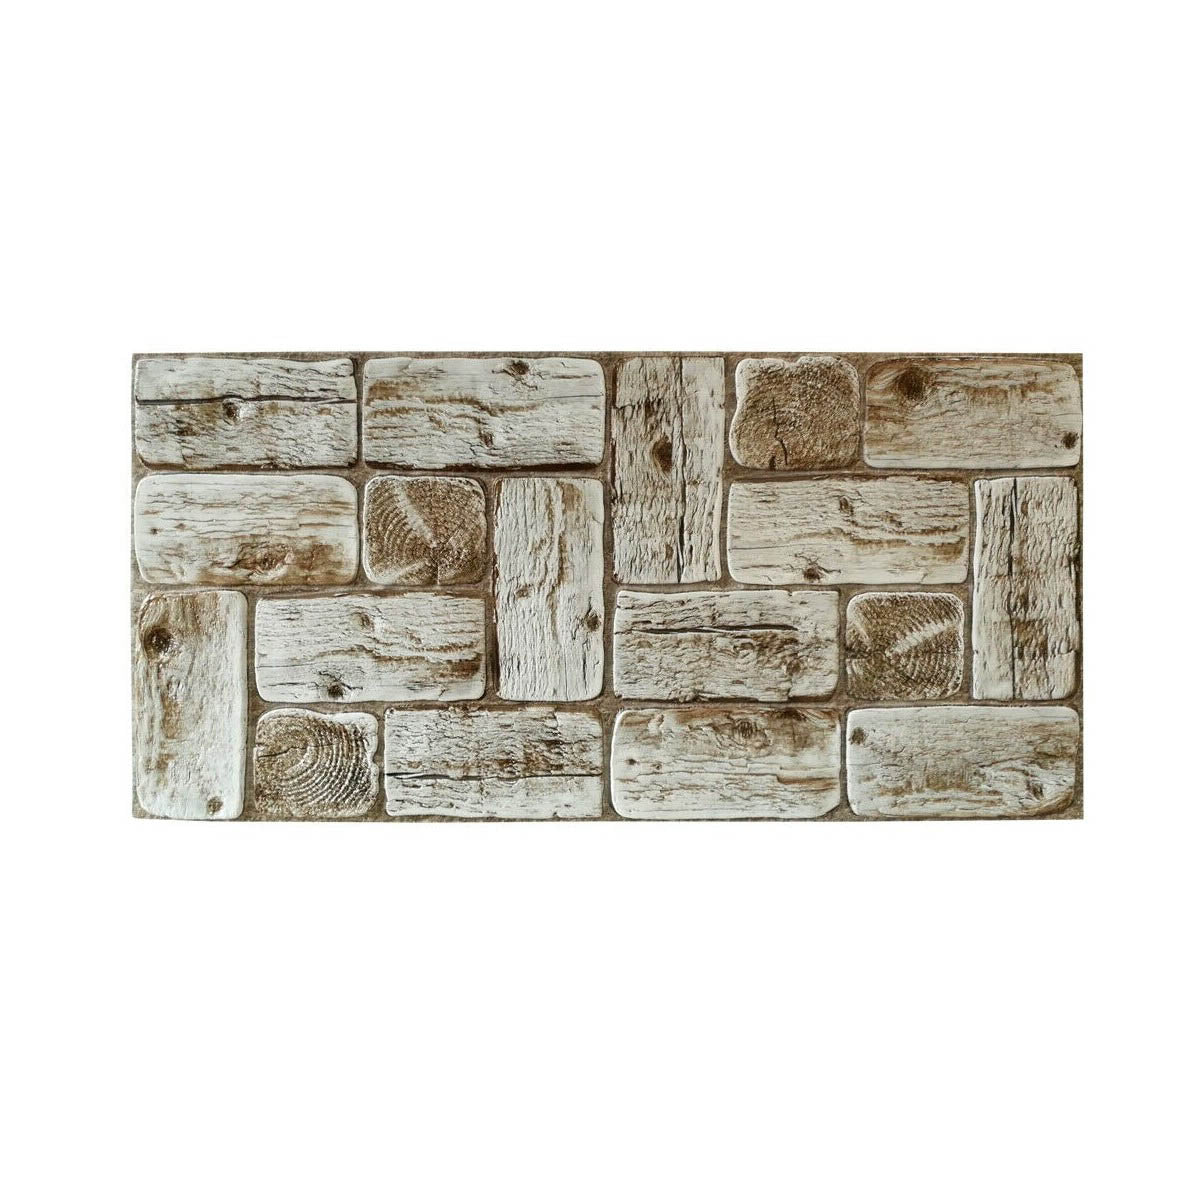 Pannello decorativo in PVC rivestimento parete finto legno TRONCHI DI PINO CHIARO 96x48cm 2 Pz 1 Mq - PlastiWood(14556464)